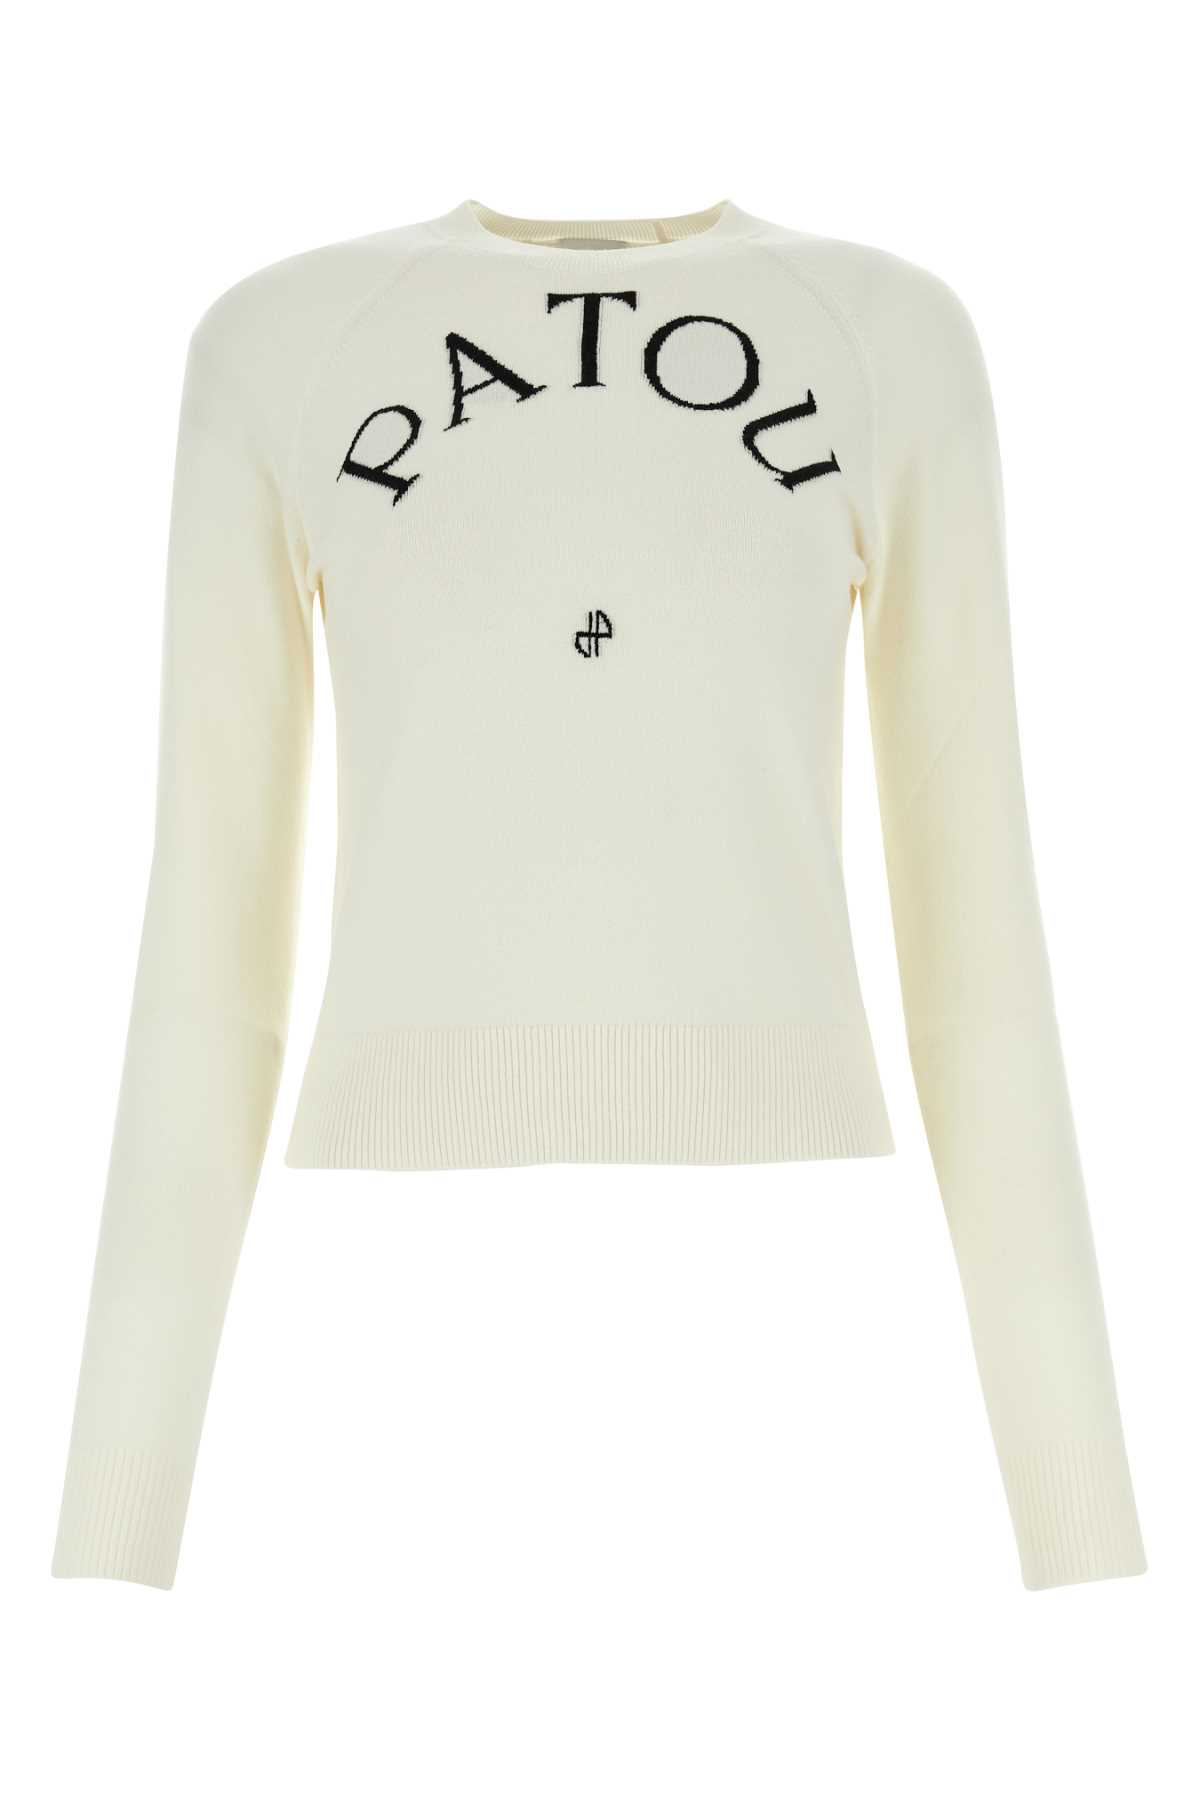 Shop Patou White Wool Blend Sweater